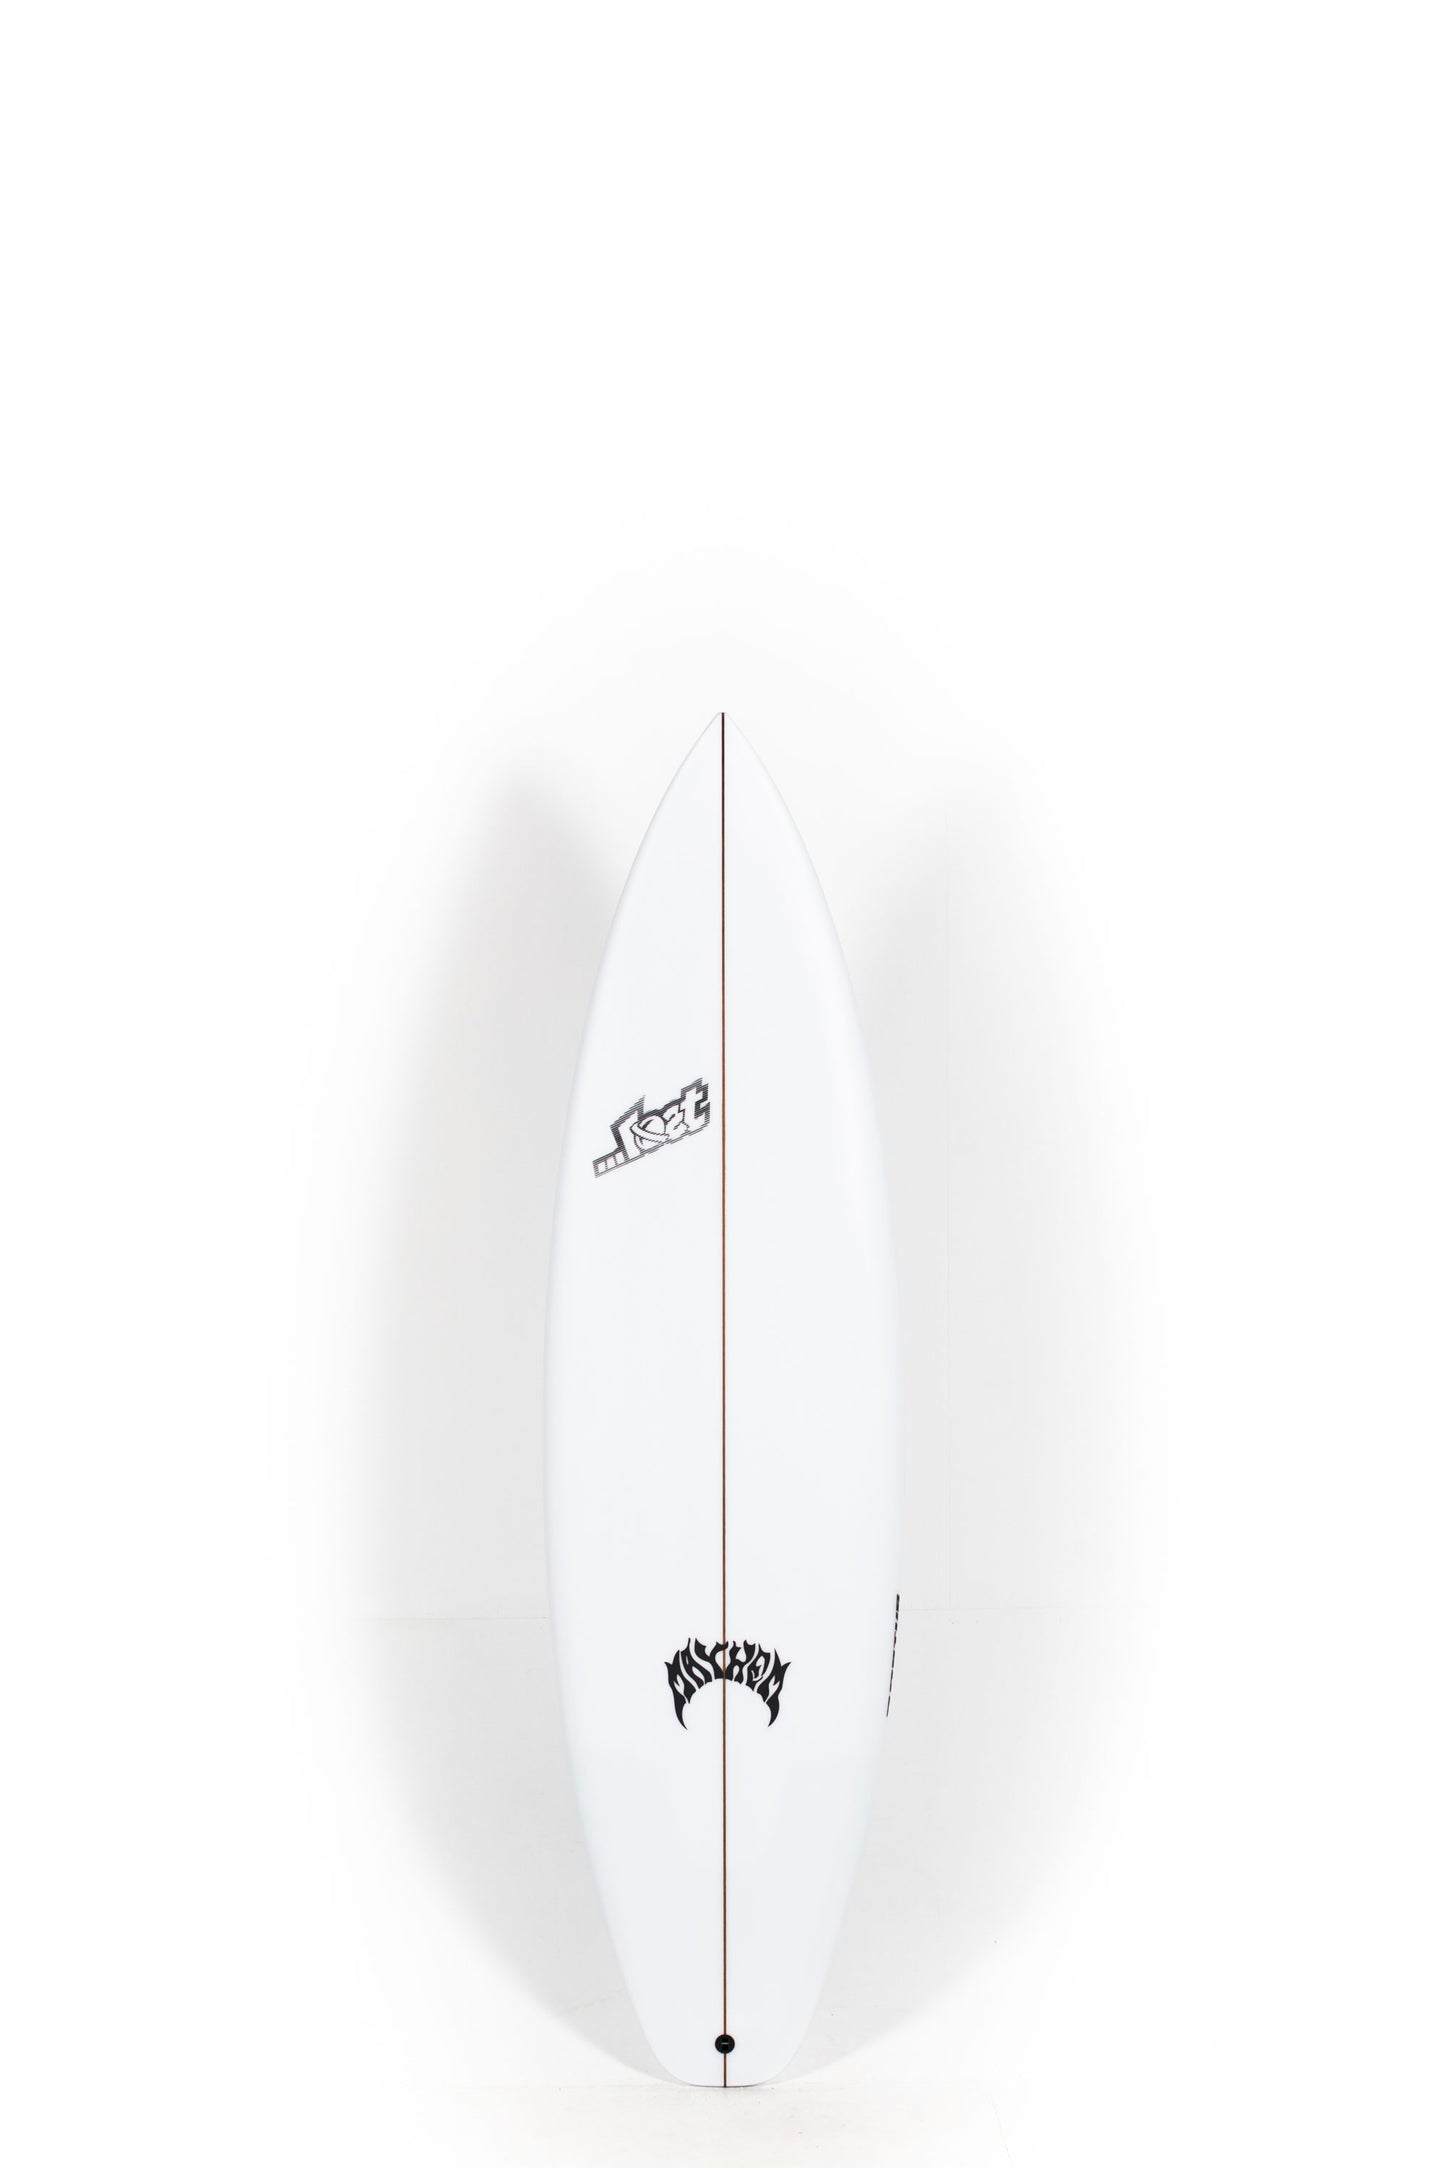 Pukas Surf Shop - Lost Surfboard - 3.0_STUB DRIVER by Matt Biolos - 6’1” x 19.63" x 2.50" - 31.75L - MH17581